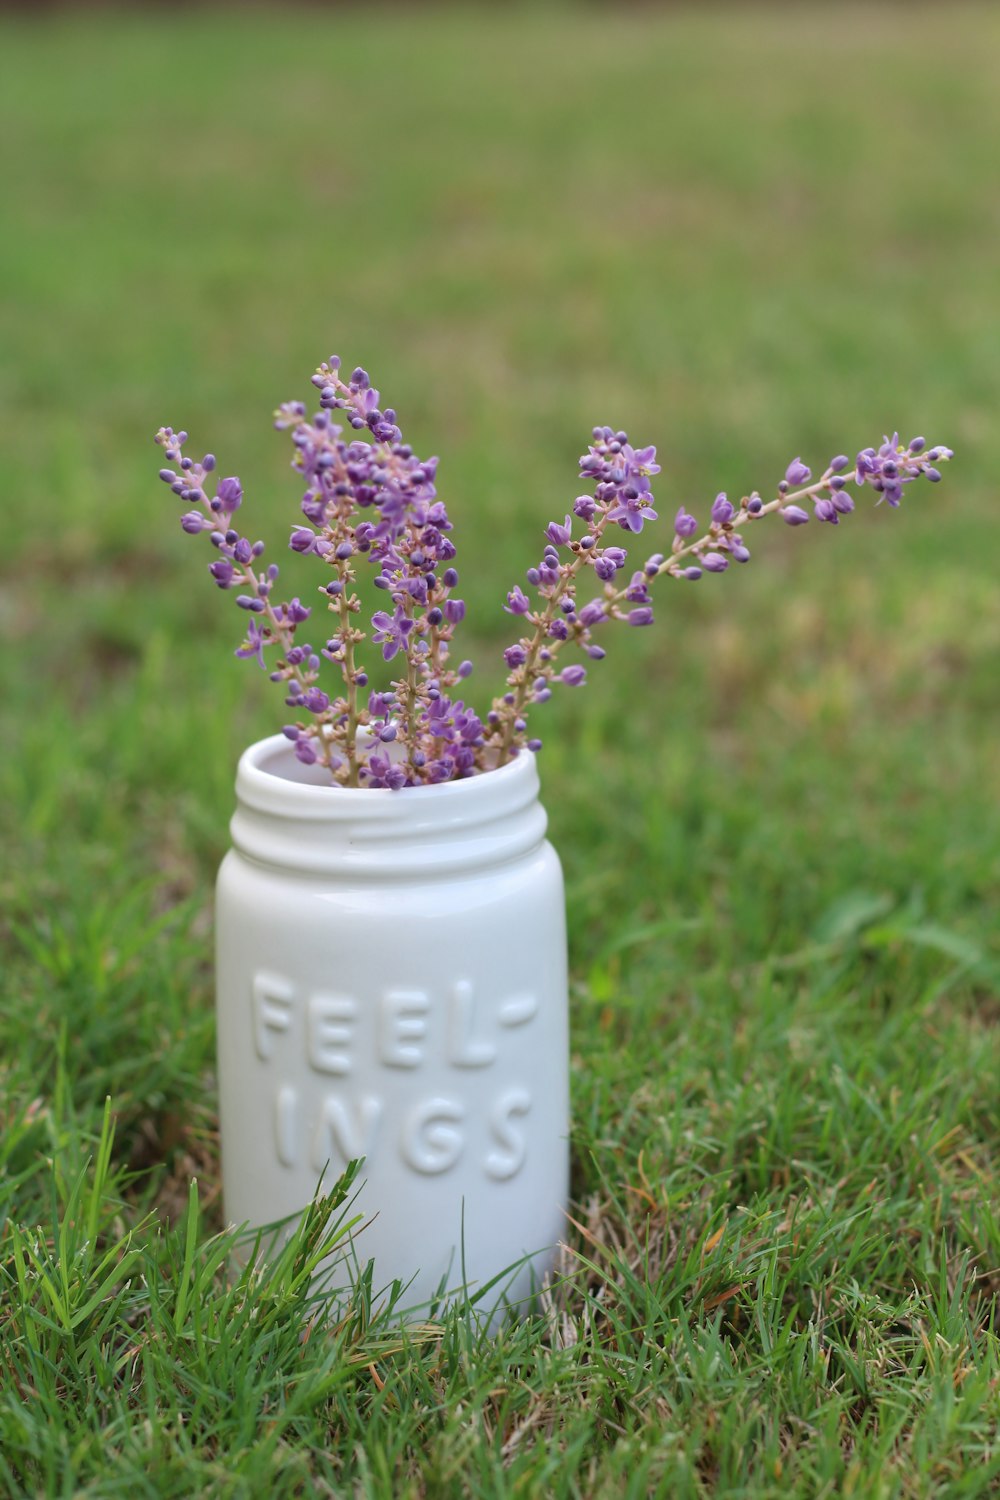 昼間は緑の芝生に白い陶器の花瓶に咲く紫色の花